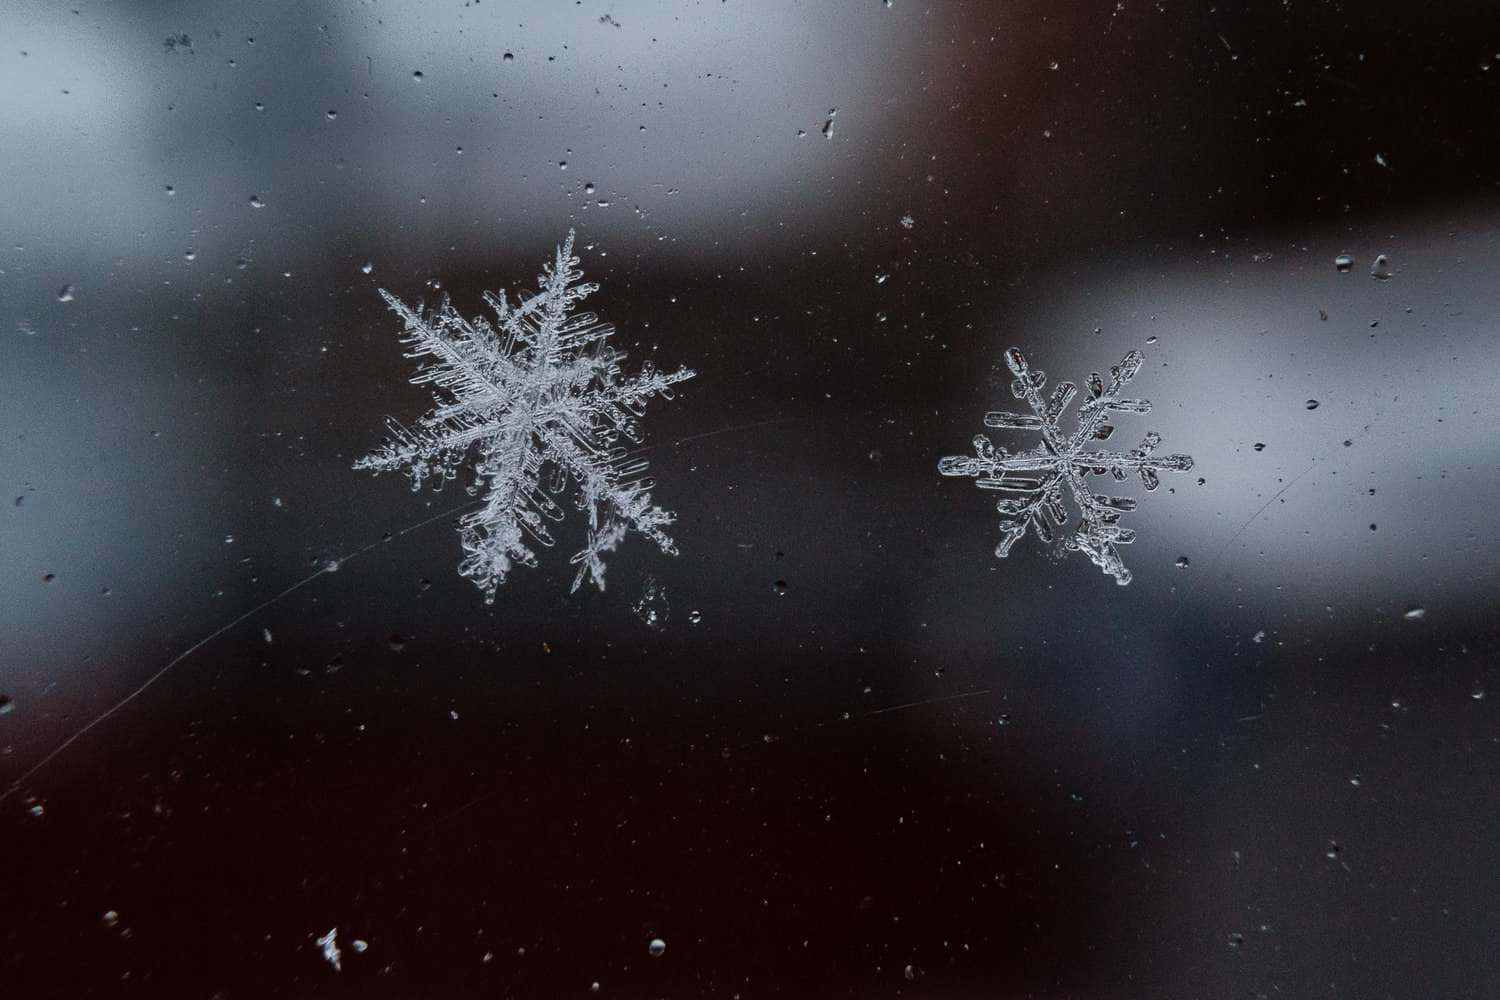 Winter wonderland of snowflakes